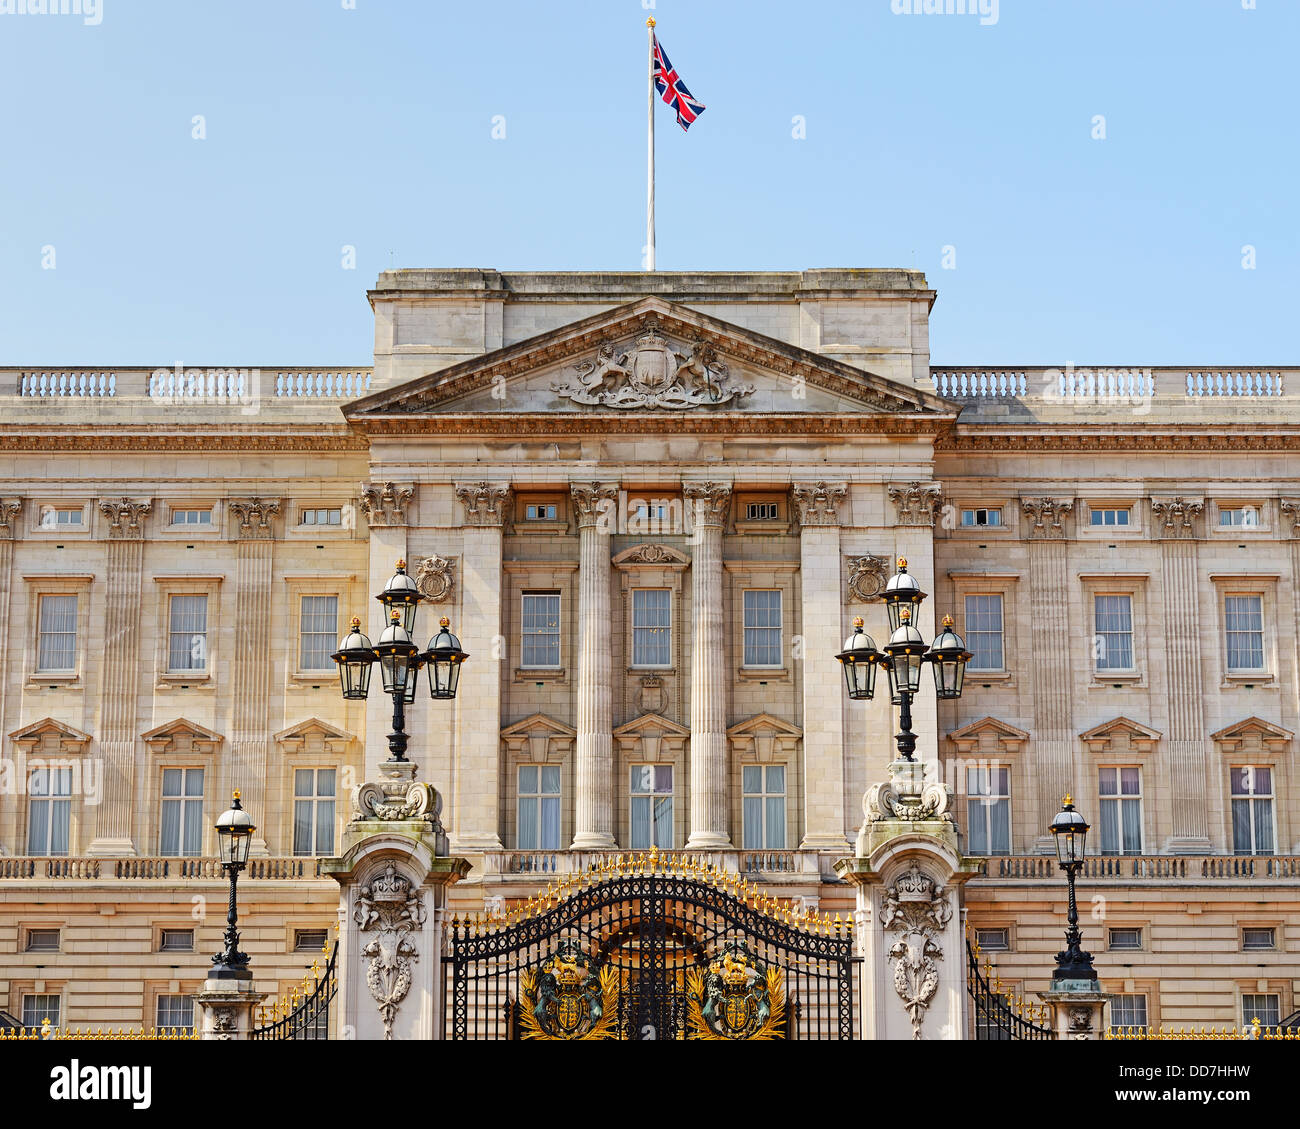 Le palais de Buckingham, Londres, Angleterre, Royaume-Uni. Banque D'Images